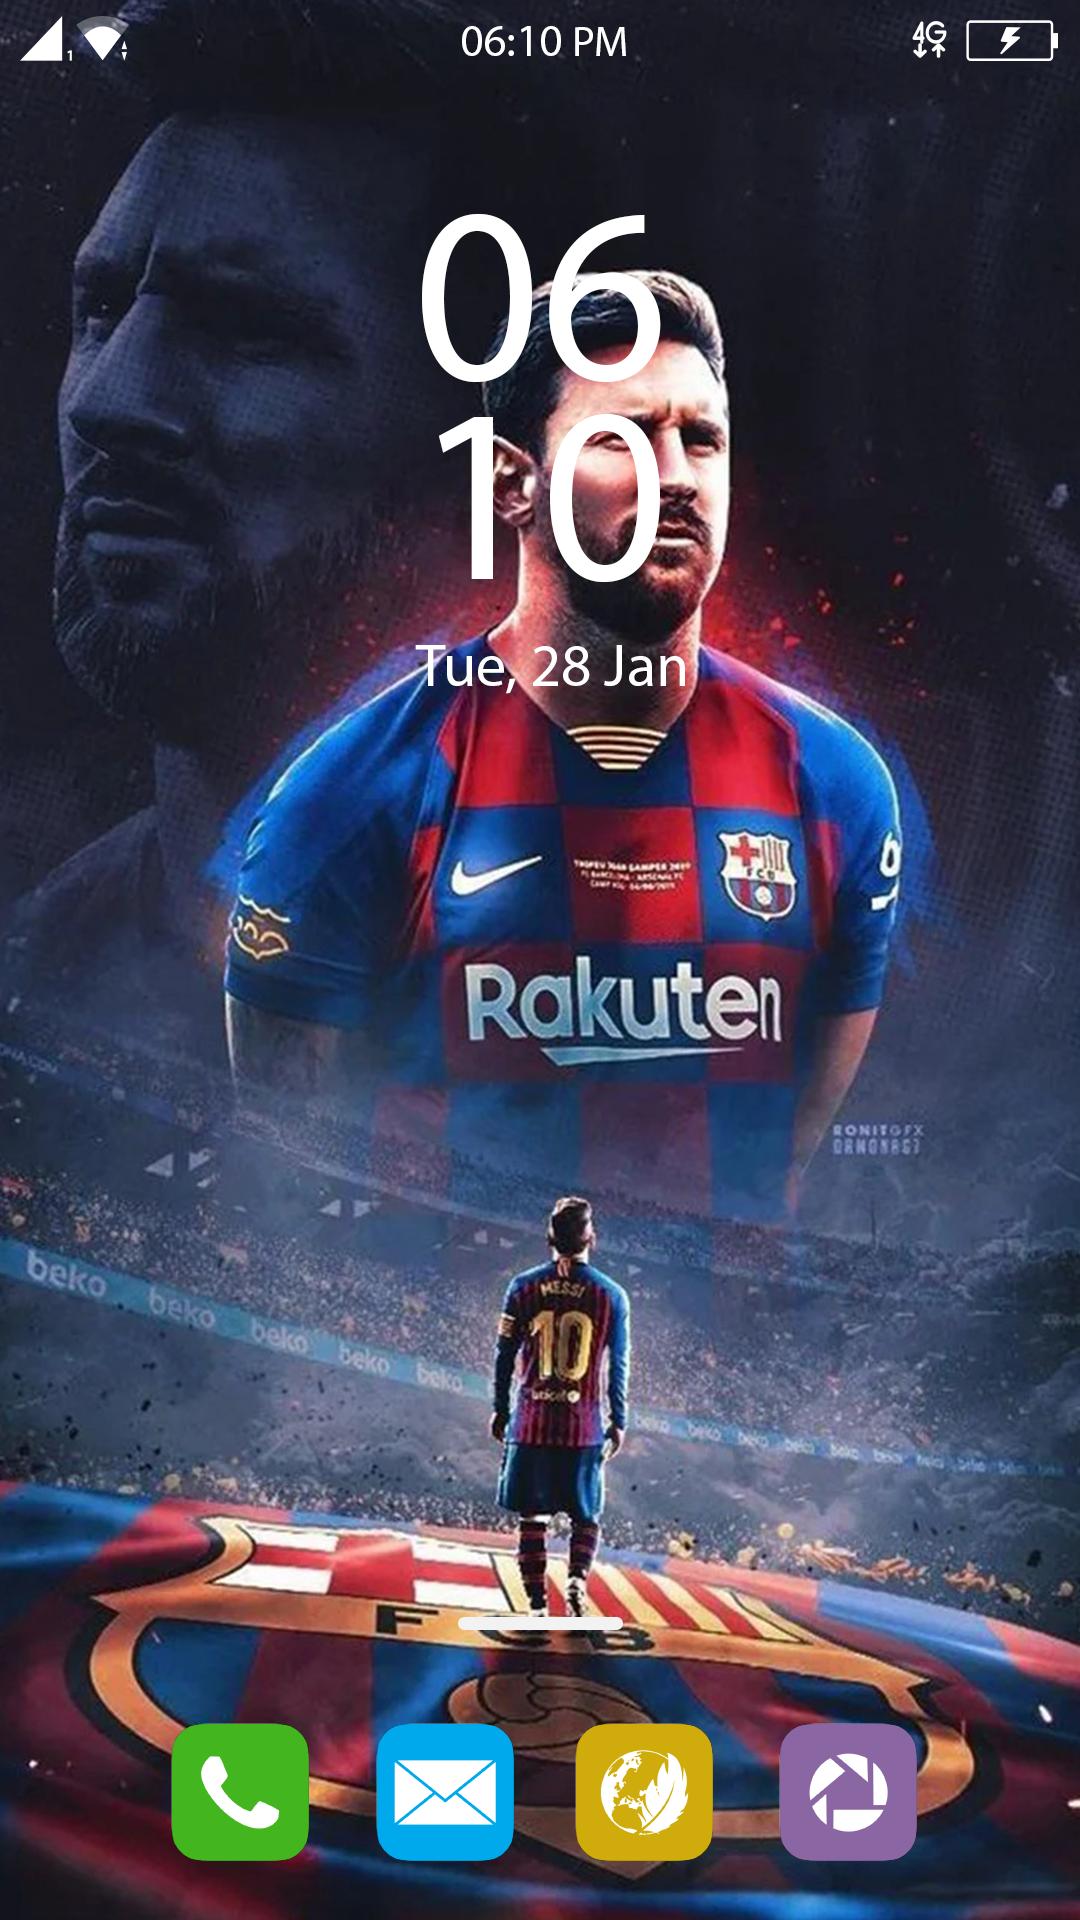 Đẳng cấp là sự khác biệt, hãy cho điện thoại của bạn những bức ảnh Messi hoàn hảo nhất với bộ sưu tập Messi Wallpapers HD. Không chỉ là một tấm nền đơn giản, nó là niềm đam mê, niềm kiêu hãnh.